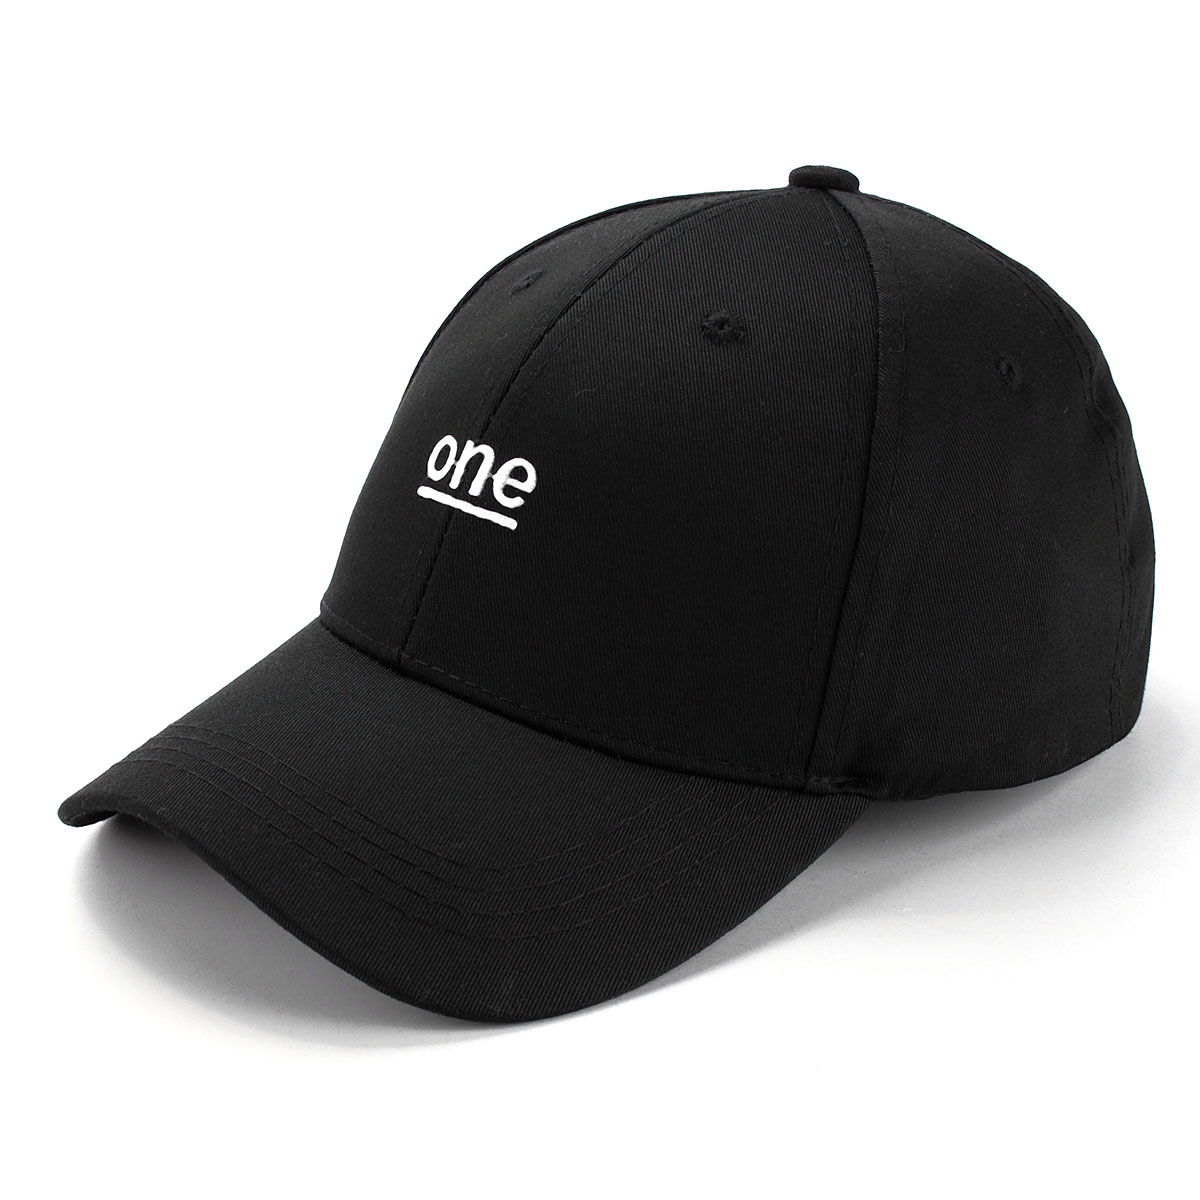 

Letter Black Hat Hip Hop Kpop Curved Strapback Baseball Cap Adjustable for Women Men